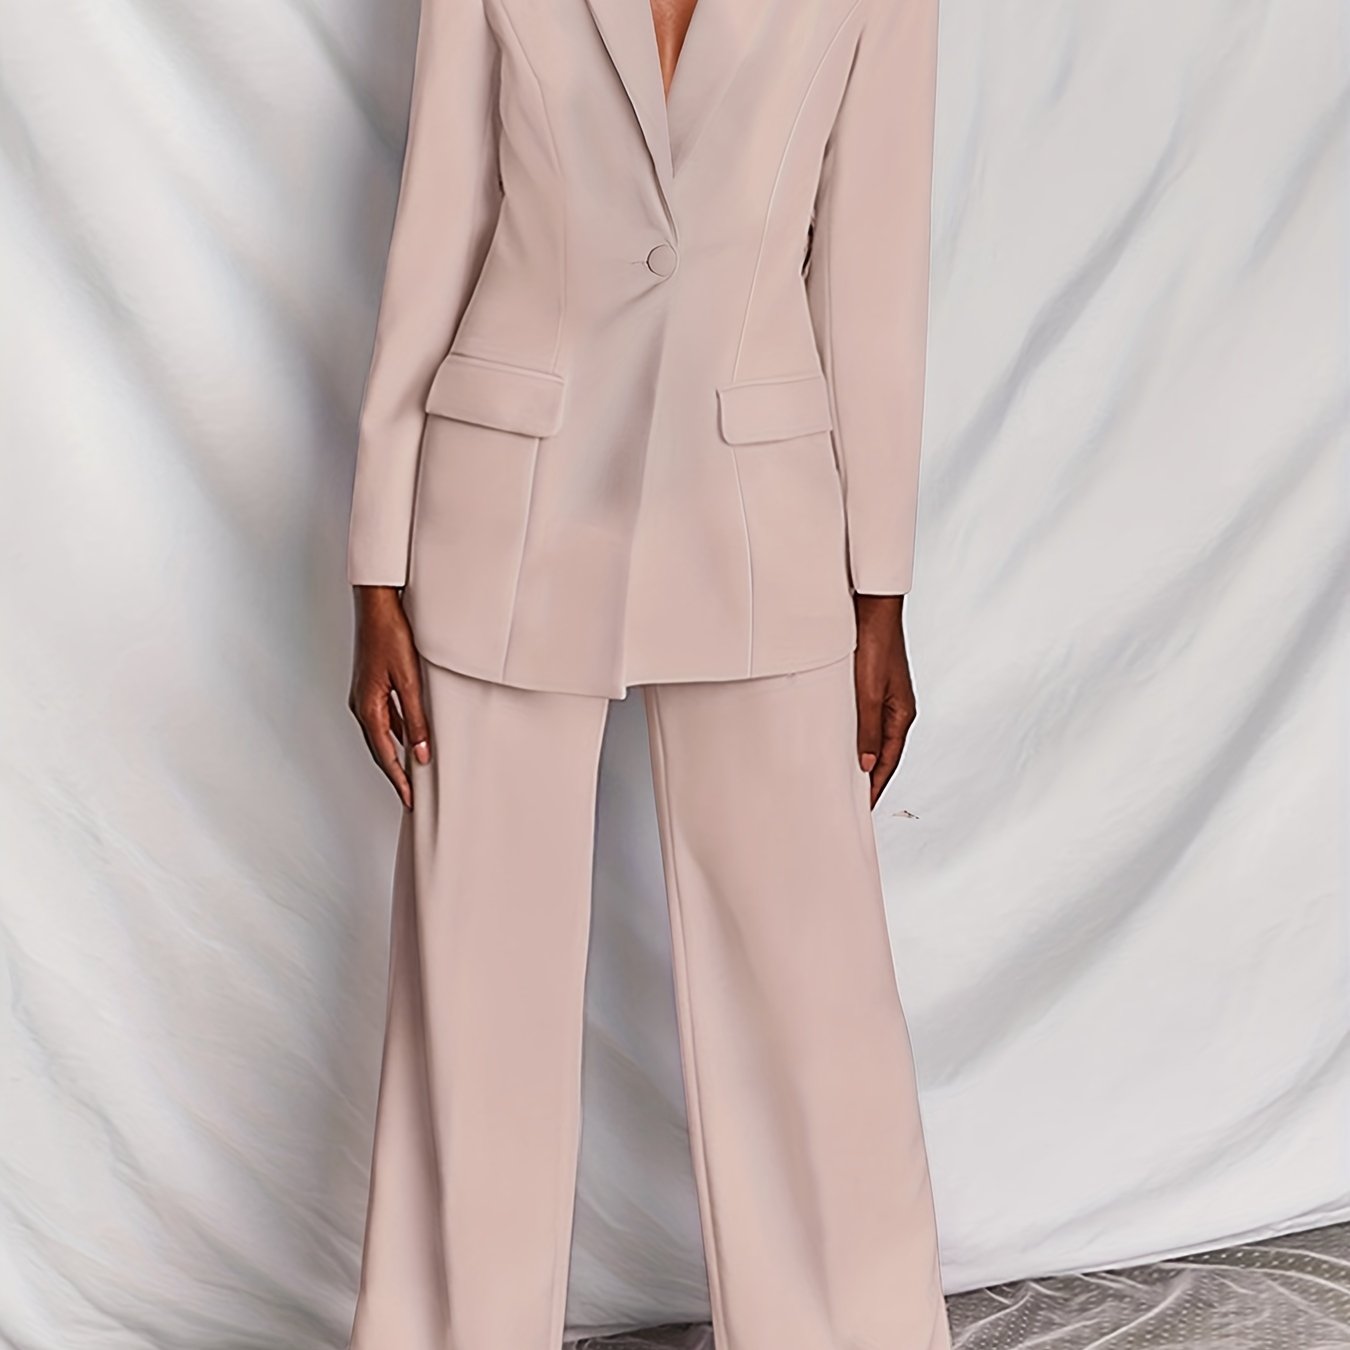 Antmvs Plus Size Basic Suit Set, Women's Plus Solid Long Sleeve Lapel Collar Workwear Blazer & Wide Leg Pants Suit 2 Piece Set